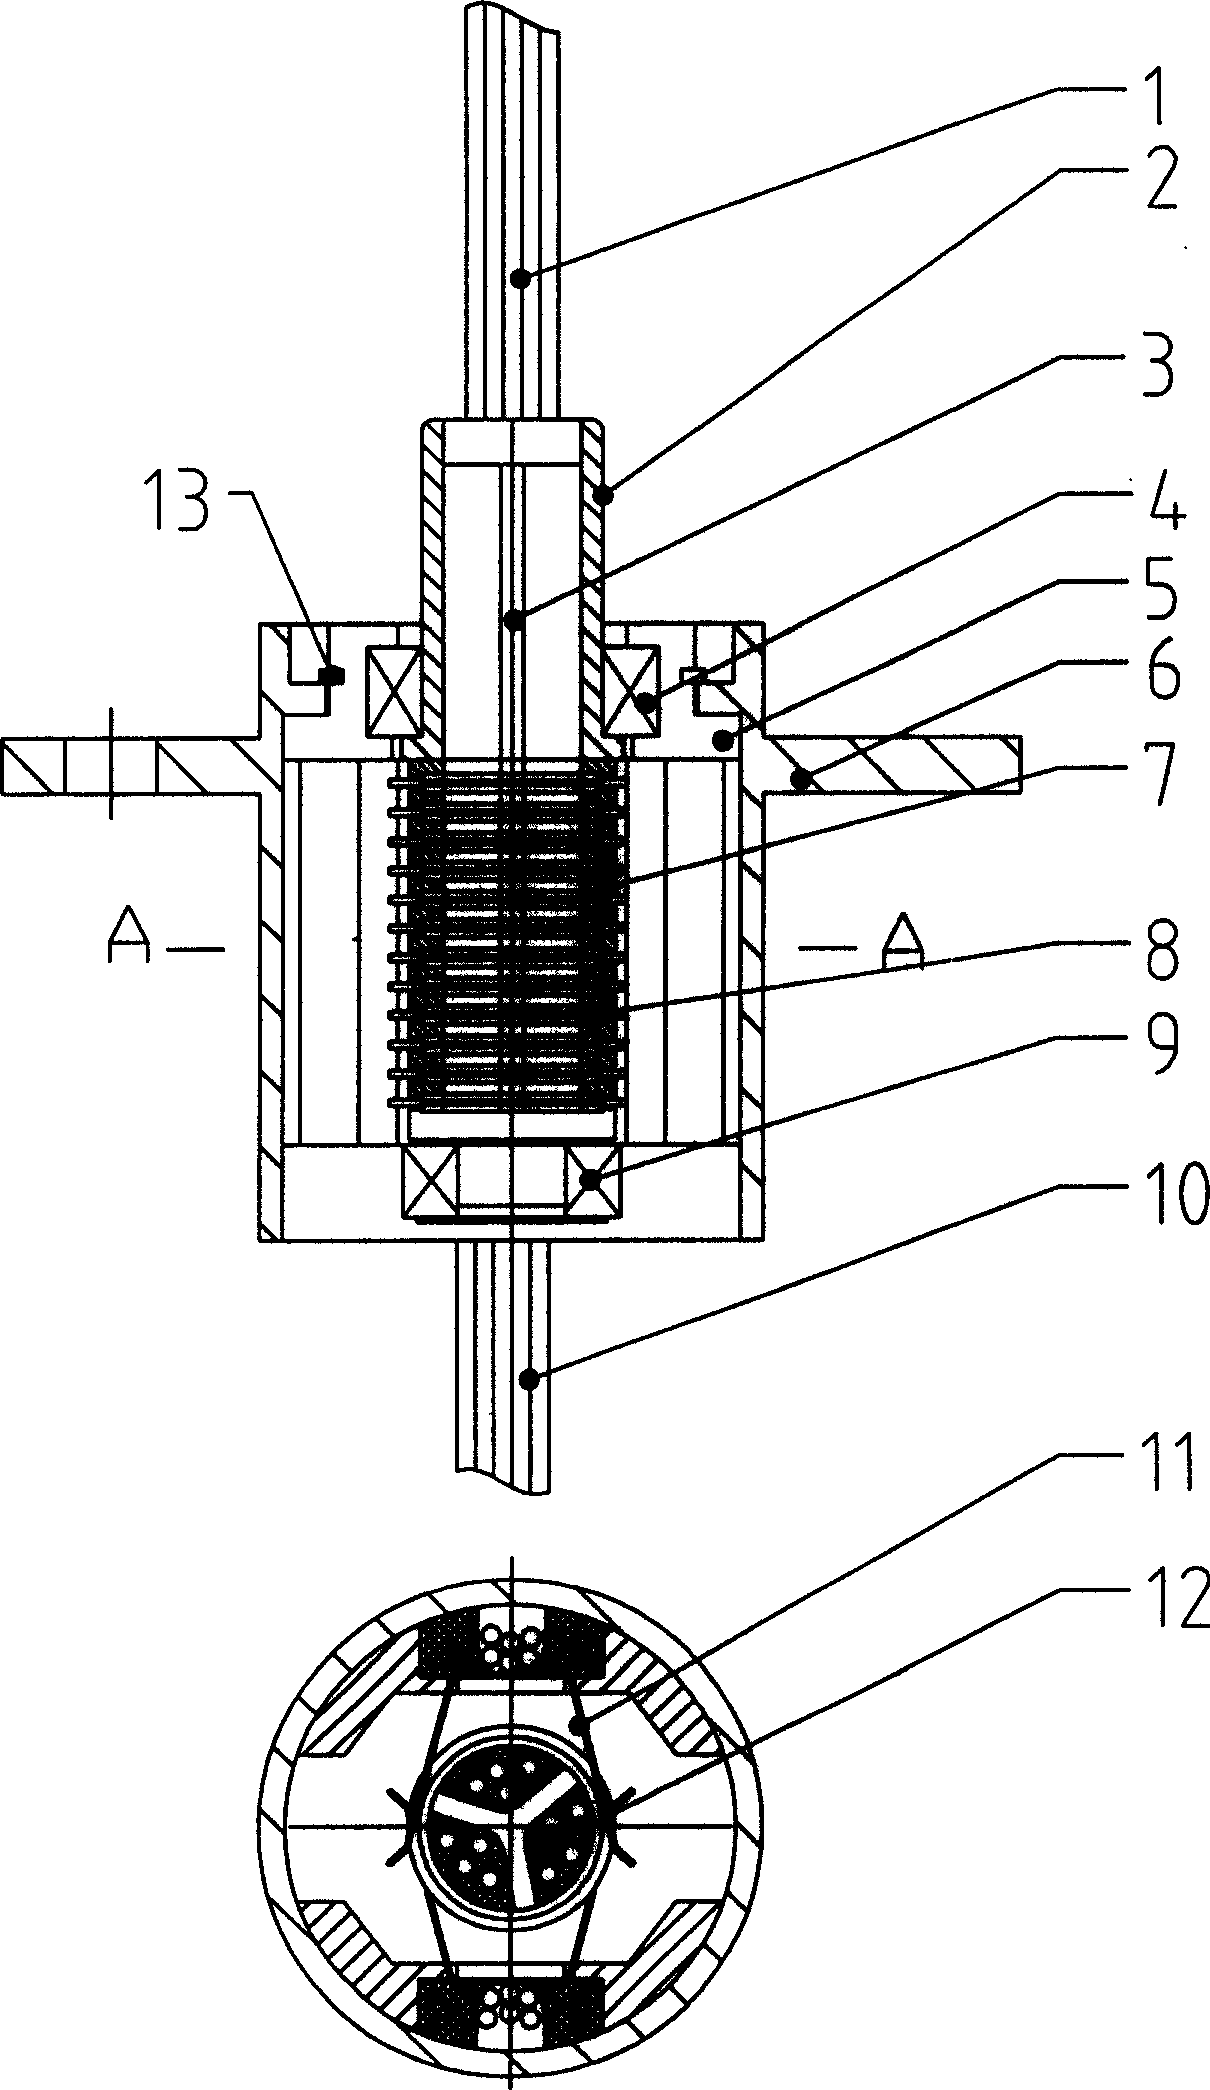 Laminated conductive rotary slip ring and producing process